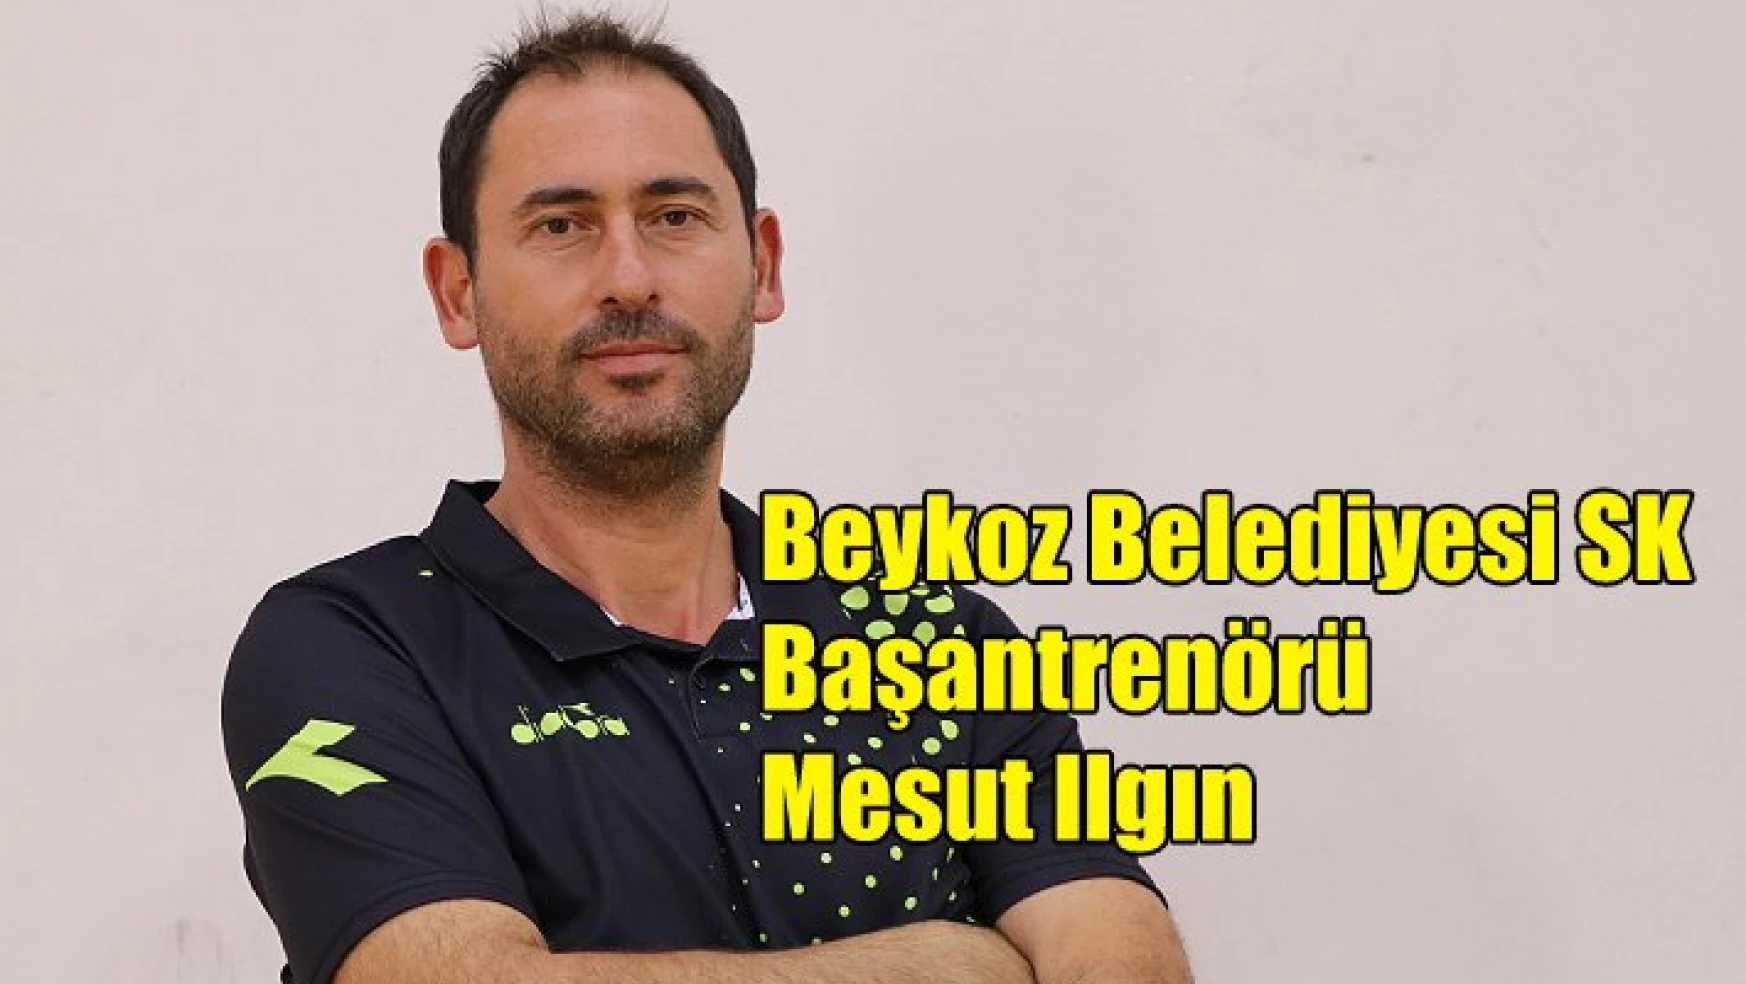 Mesut Ilgın: “Antalyaspor, çekindiğimiz rakiplerden biri idi”